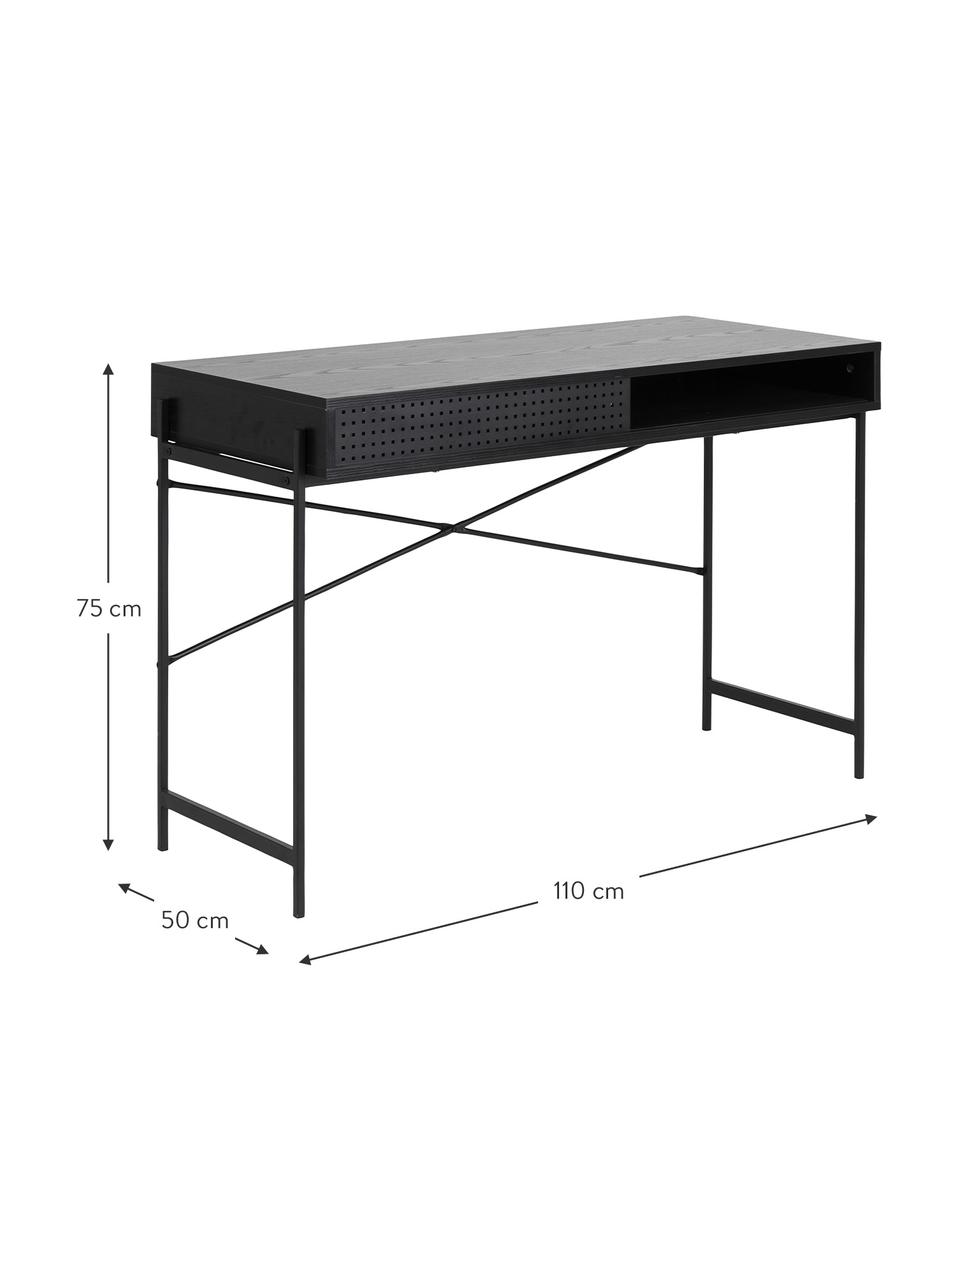 Dřevěný psací stůl s úložným prostorem Angus, Dřevo, černě lakované, Š 110 cm, H 50 cm